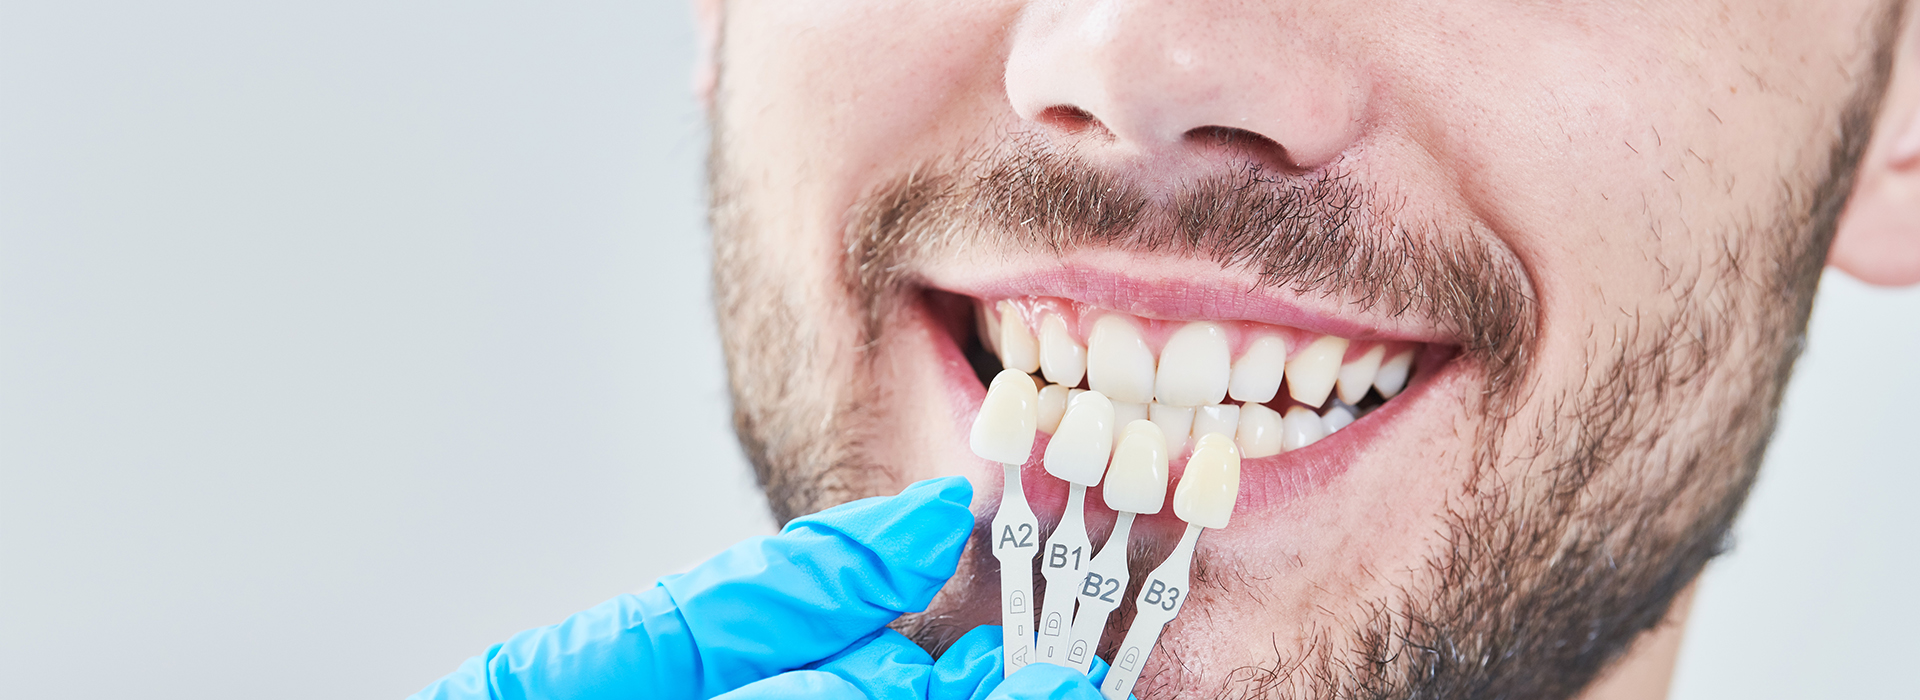 Dental Implants Dentist Vista CA